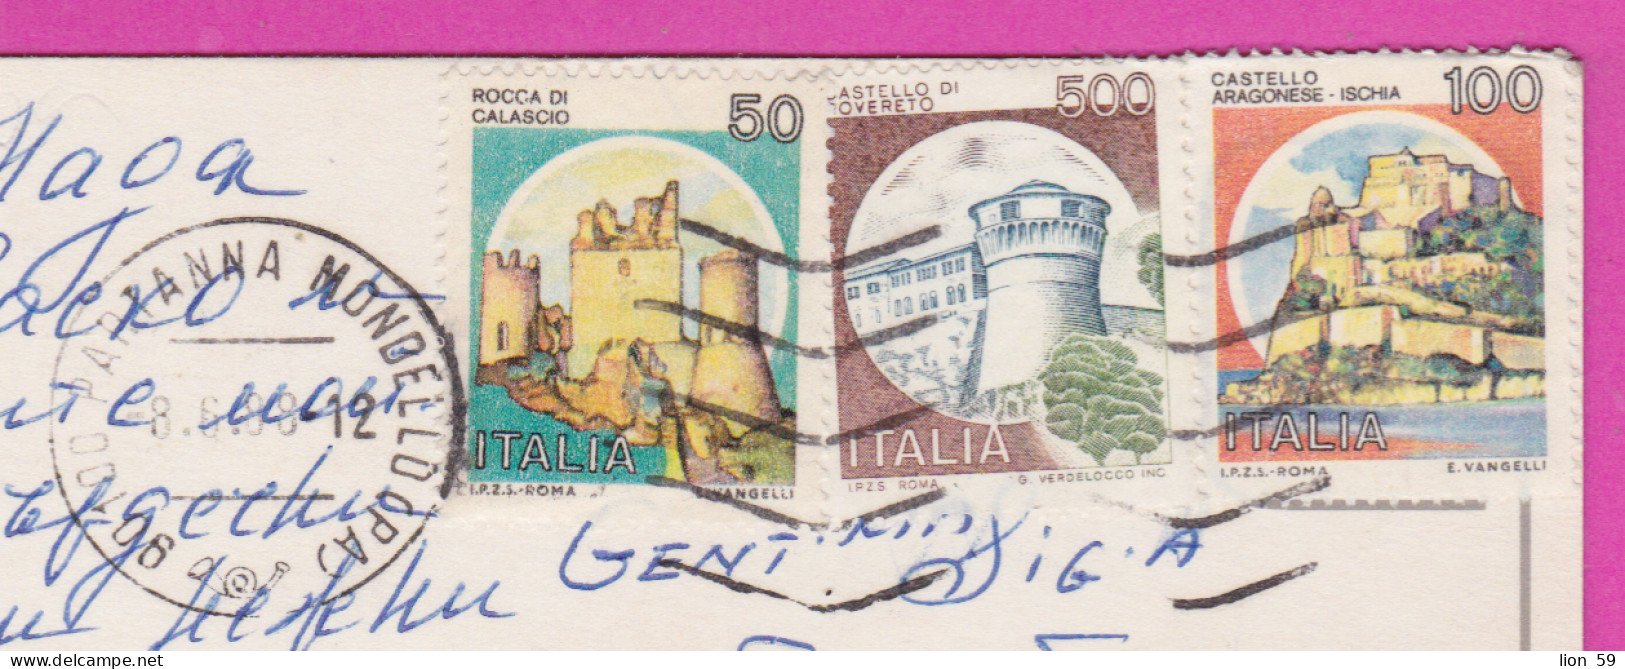 293825 / Italy - Saluti Da Mondello PC 1988 USED 50+100+500 L  Rocca Di Calascio Castello Aragonese - Ischia Rovereto - 1981-90: Poststempel